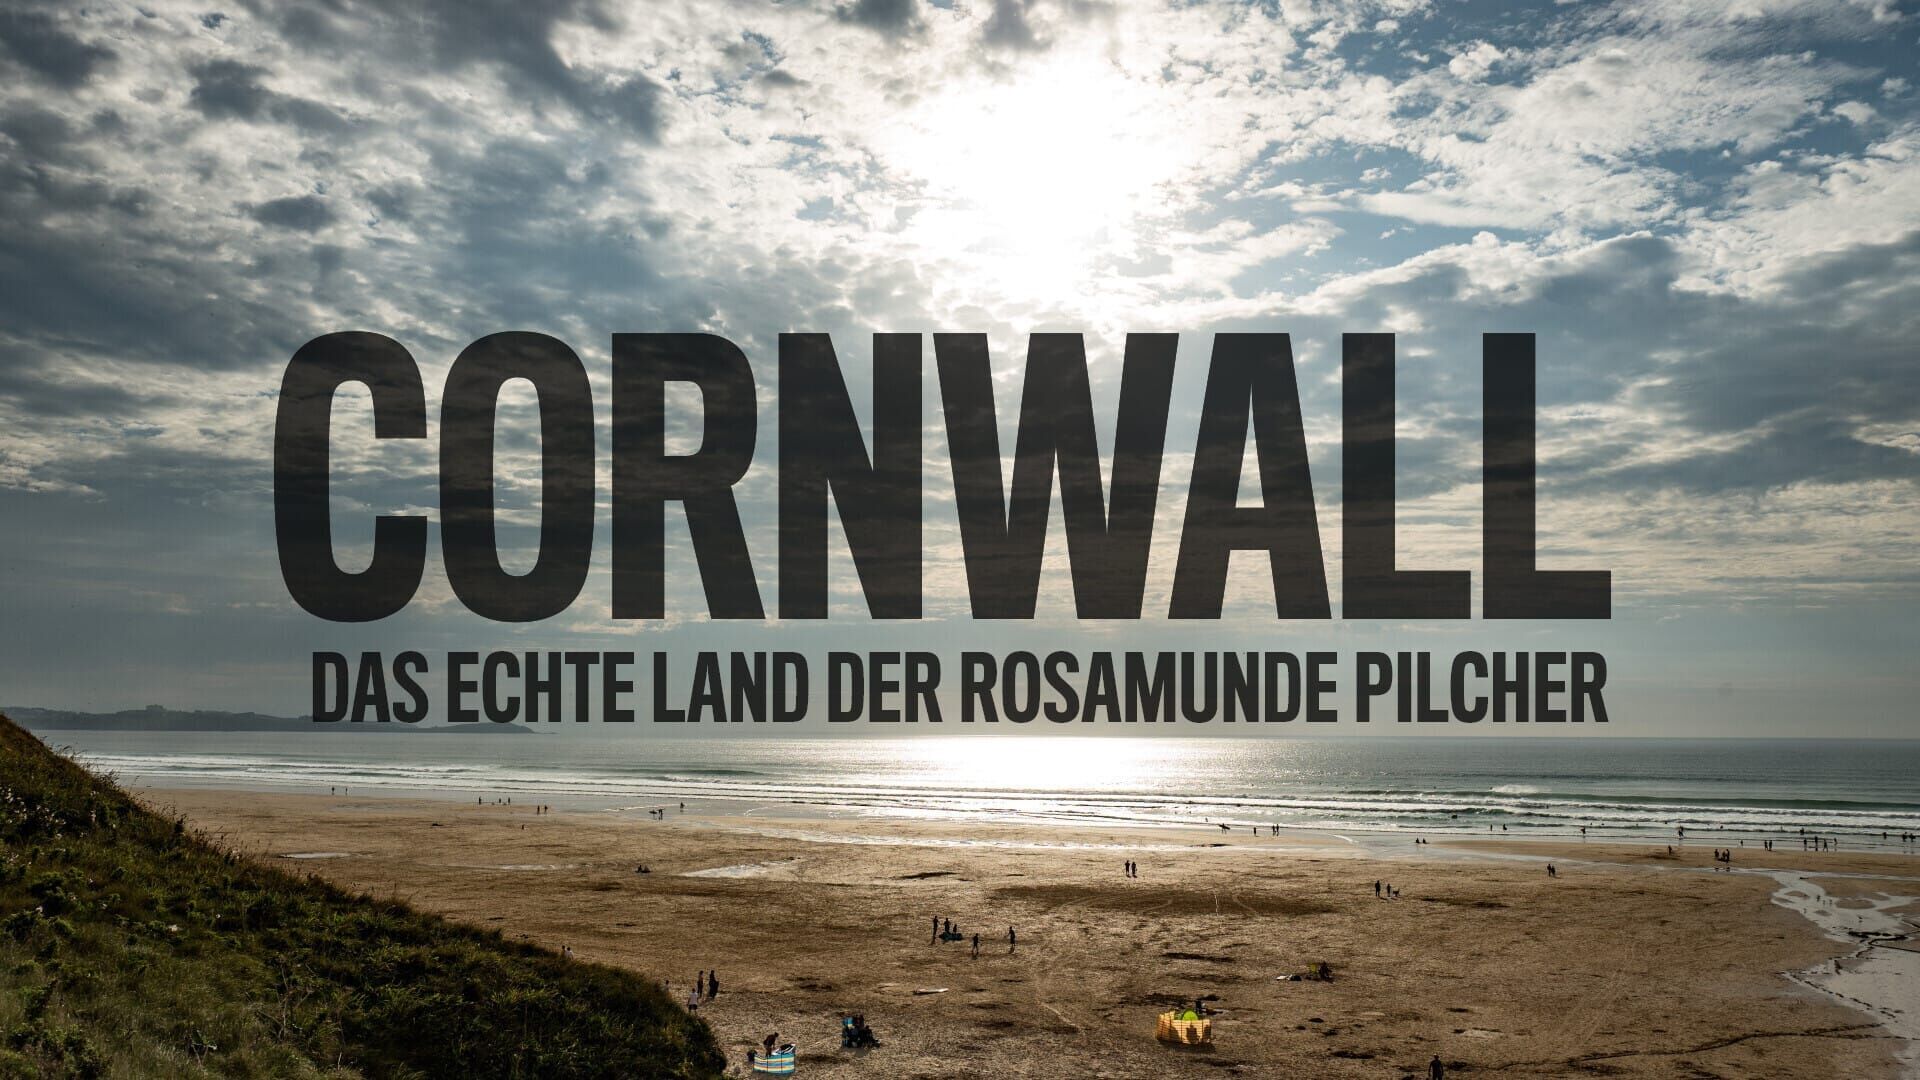 Cornwall – Das echte Land der Rosamunde Pilcher